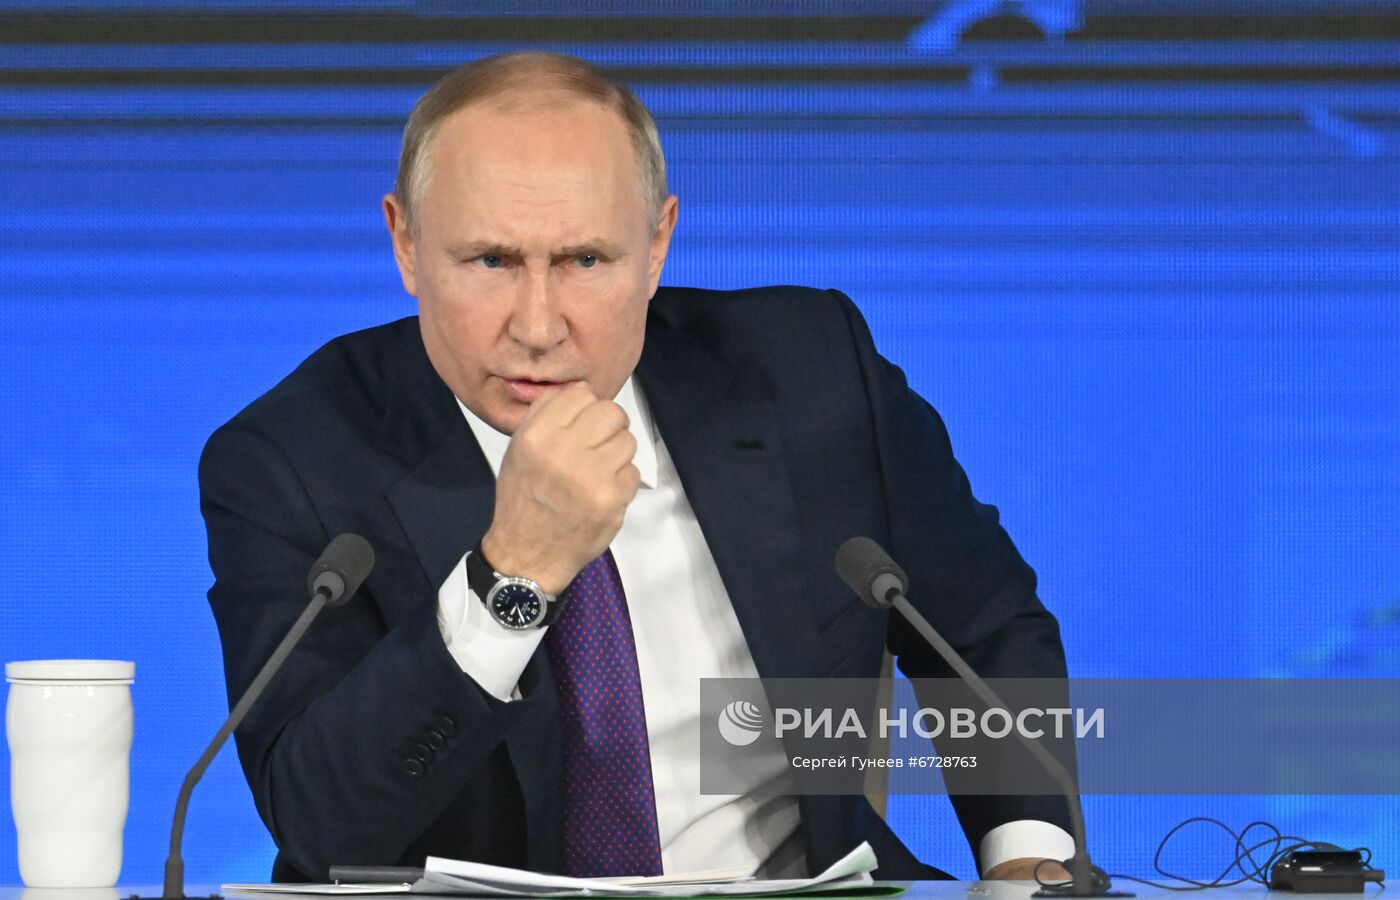 Ежегодная пресс-конференция президента России Владимира Путина